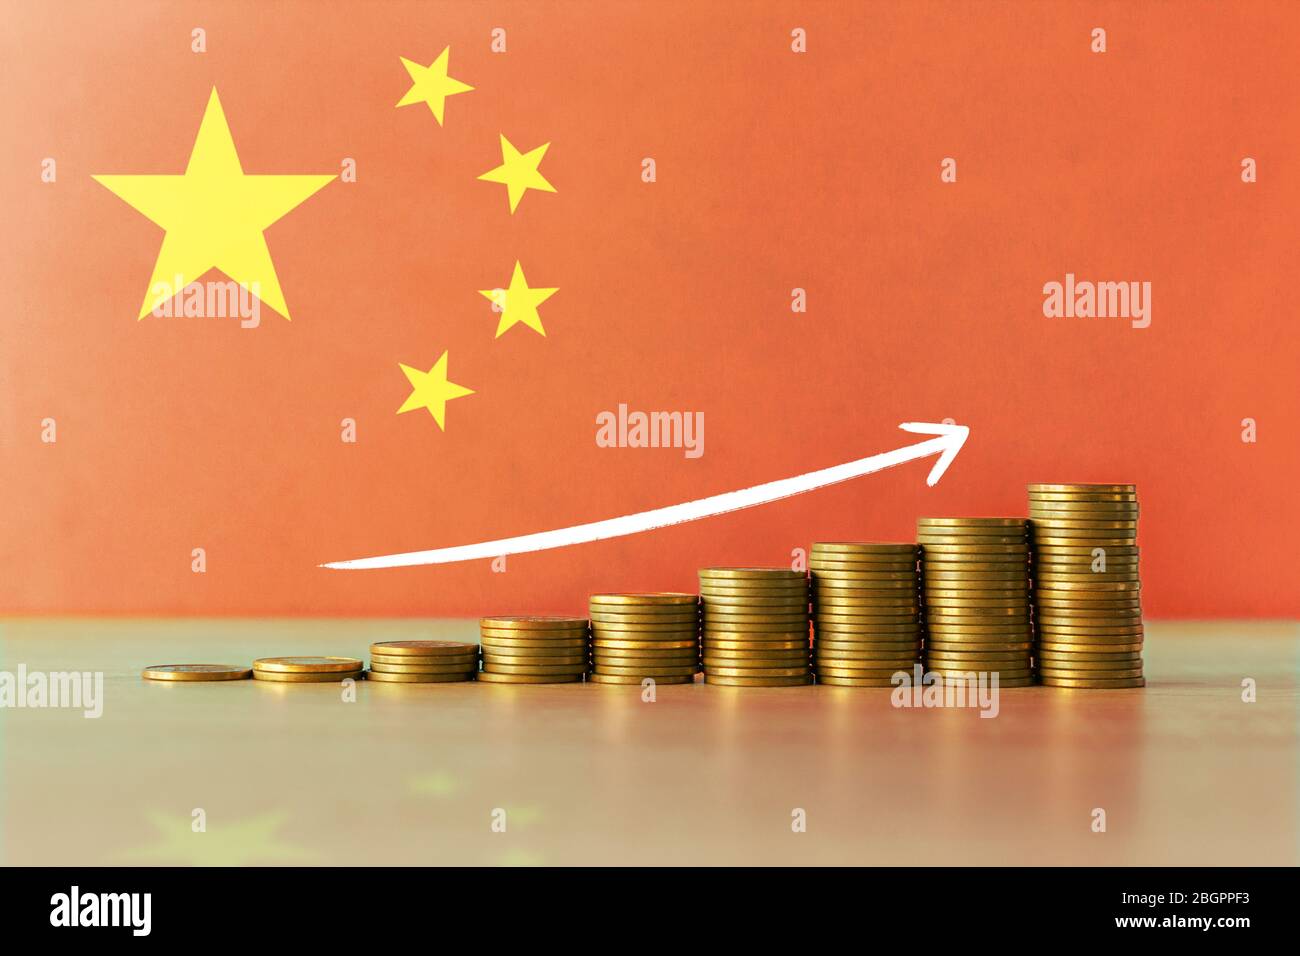 Stockfoto des Konzepts der wirtschaftlichen Erholung und des Wohlstands in China mit einer aufsteigenden Treppe von Münzen und der Flagge im Hintergrund Stockfoto